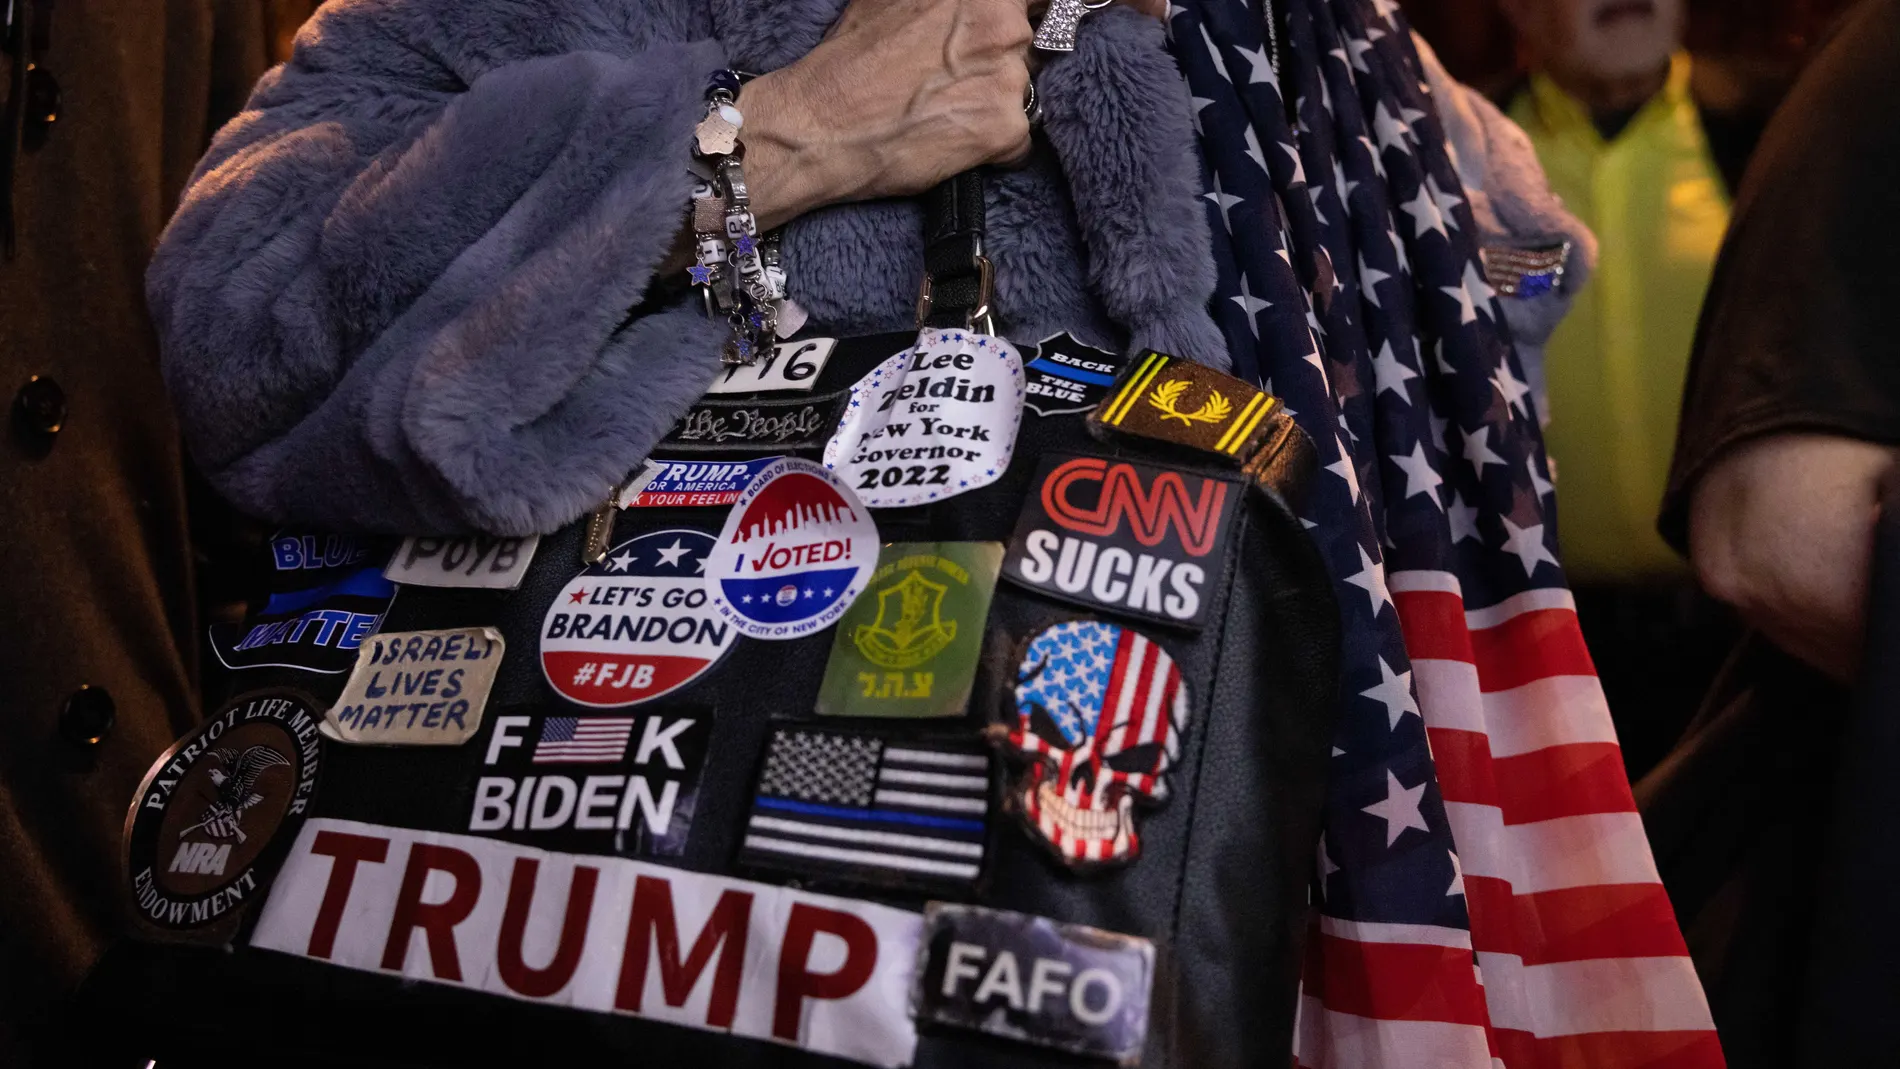 Una mujer sostiene una bolsa cubierta con pegatinas políticas pro-Trump mientras los partidarios ven los resultados en vivo durante una fiesta de observación de las elecciones para el candidato republicano a gobernador de Nueva York Lee Zeldin en la ciudad de Nueva York